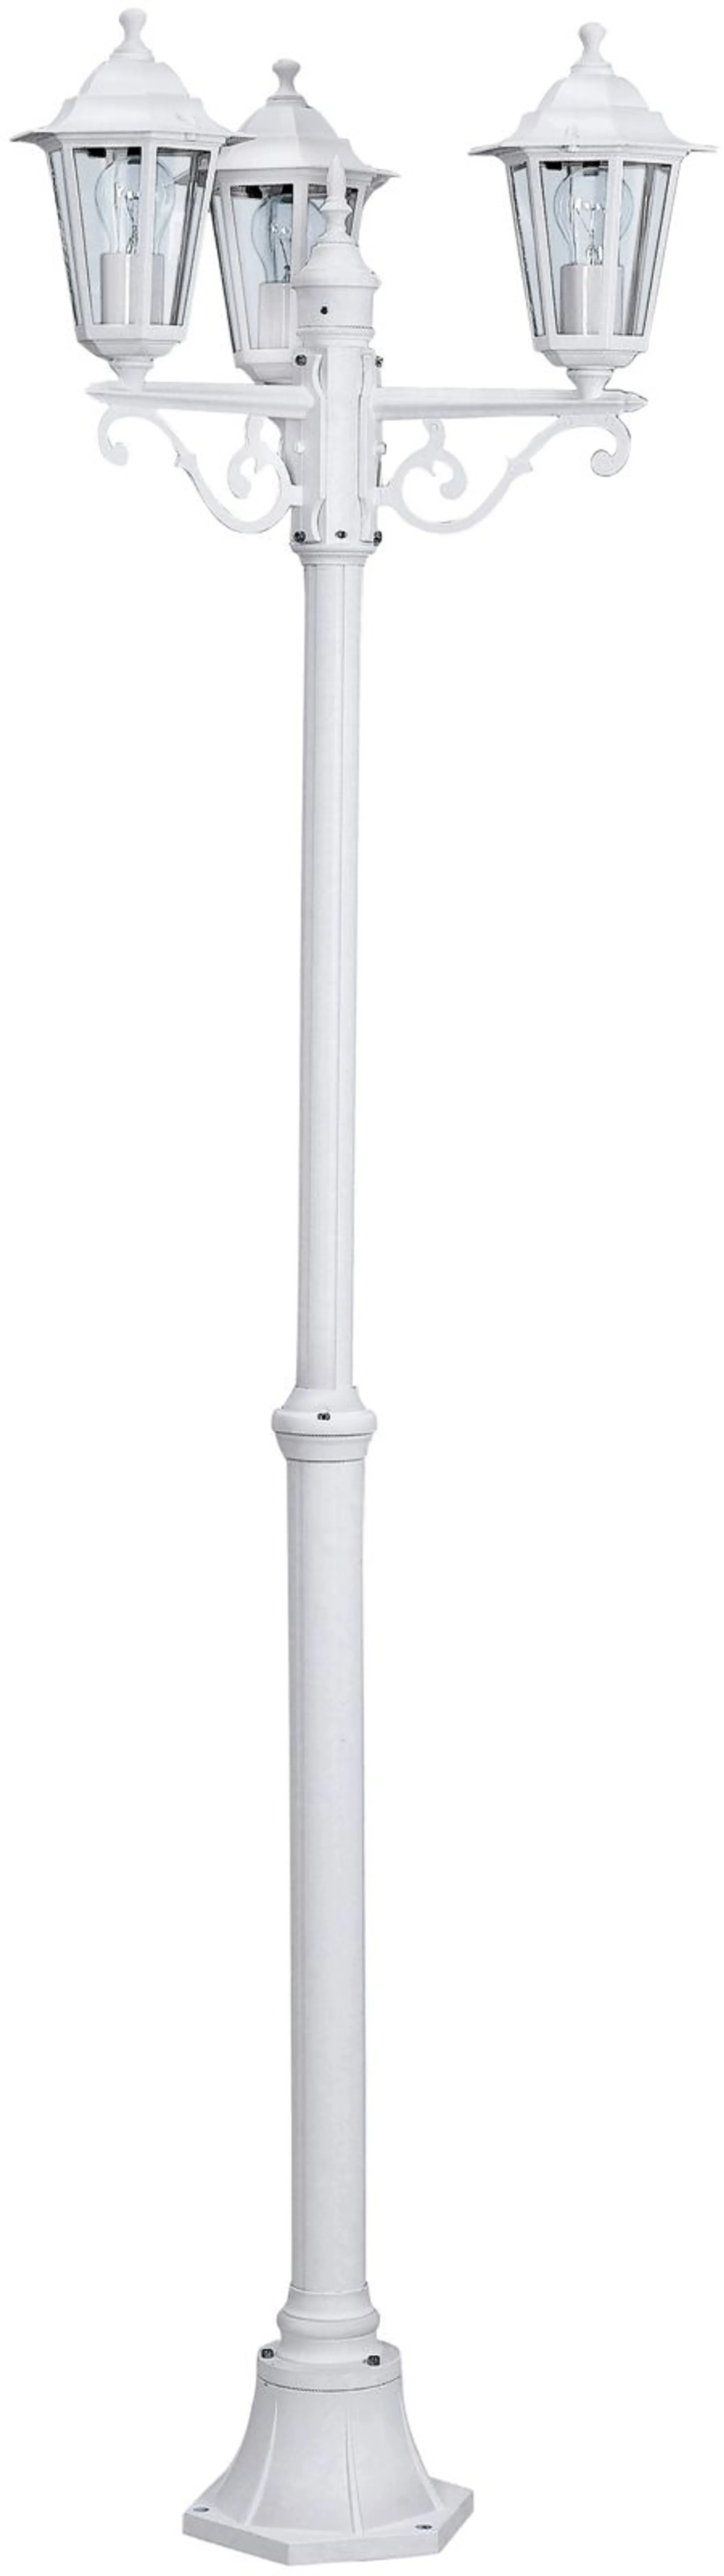 Eglo ulkopylväsvalaisin Laterna 192cm 3-osainen valkoinen - 1